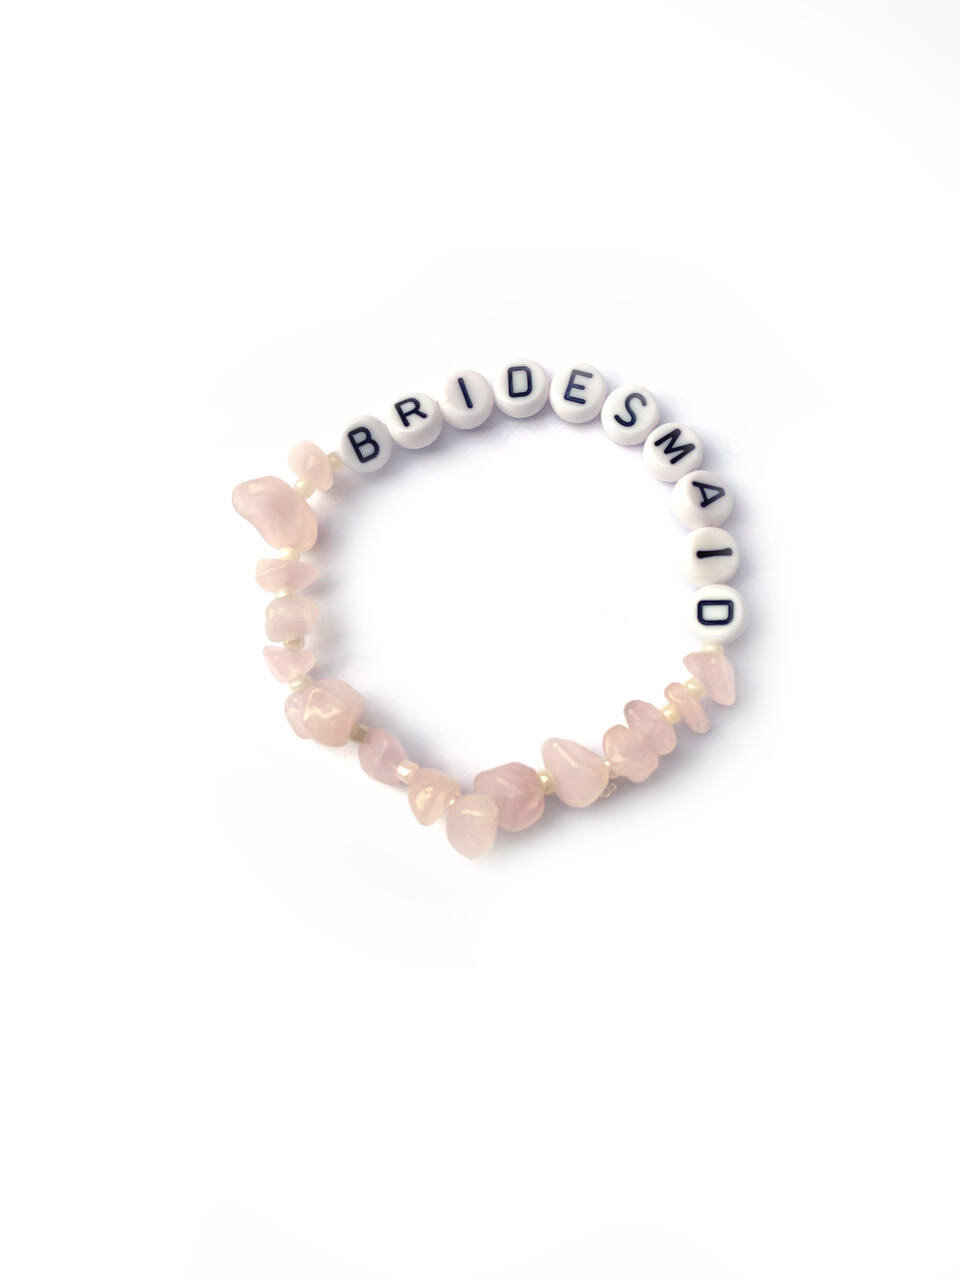 Rose quartz personalised bracelet, £46